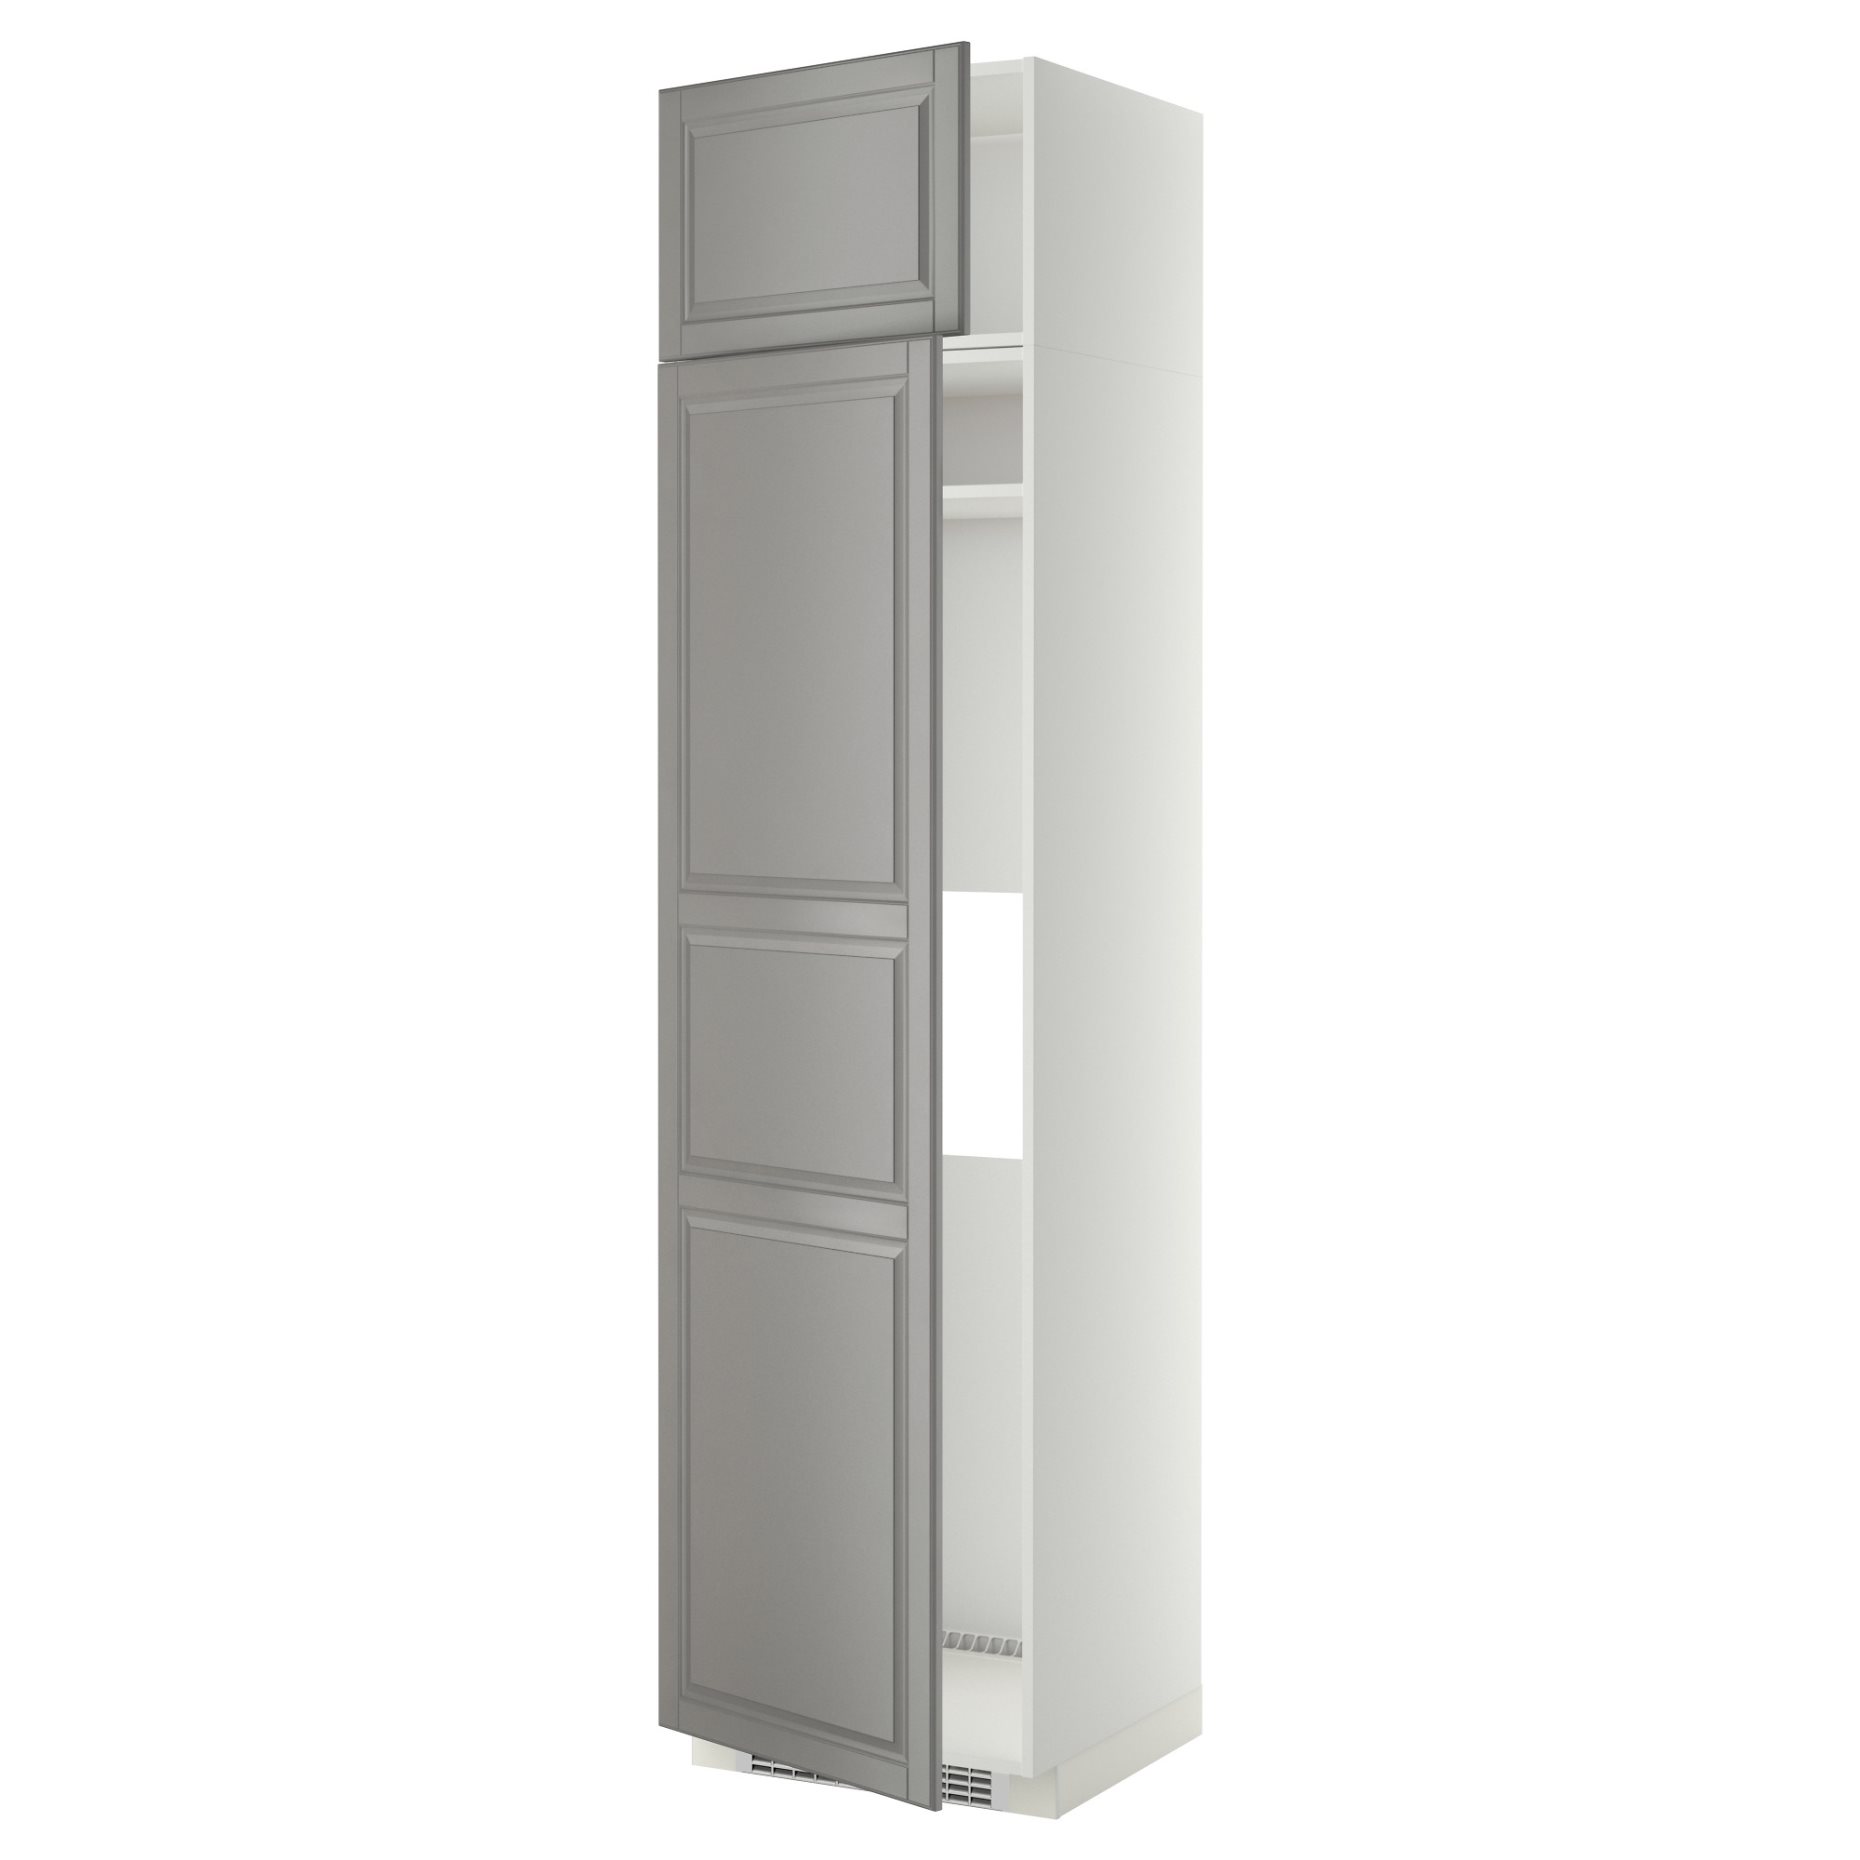 METOD, ψηλό ντουλάπι για ψυγείο ή καταψύκτη με 2 συρτάρια, 60x60x240 cm, 794.649.21